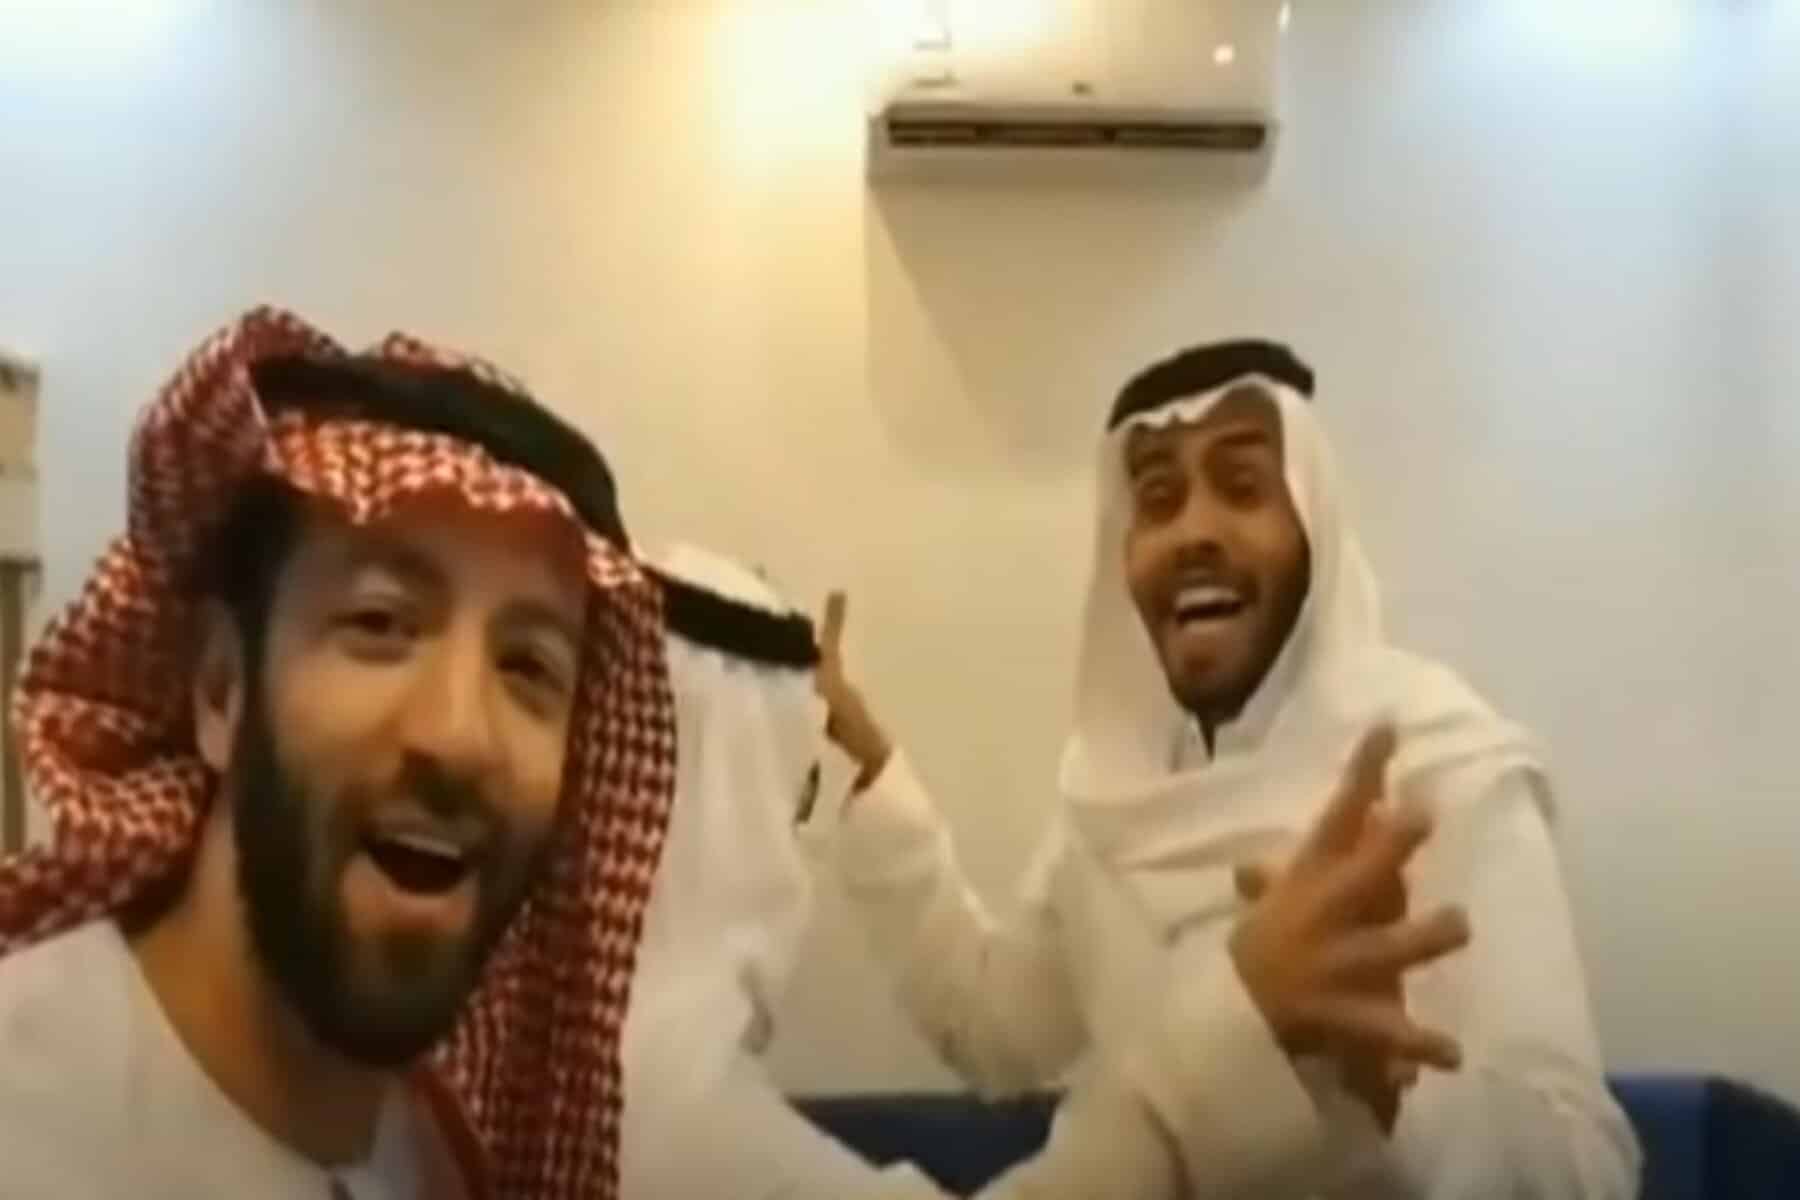 سعودي يثير الضجة بترديده أغنية عبرية من الرياض